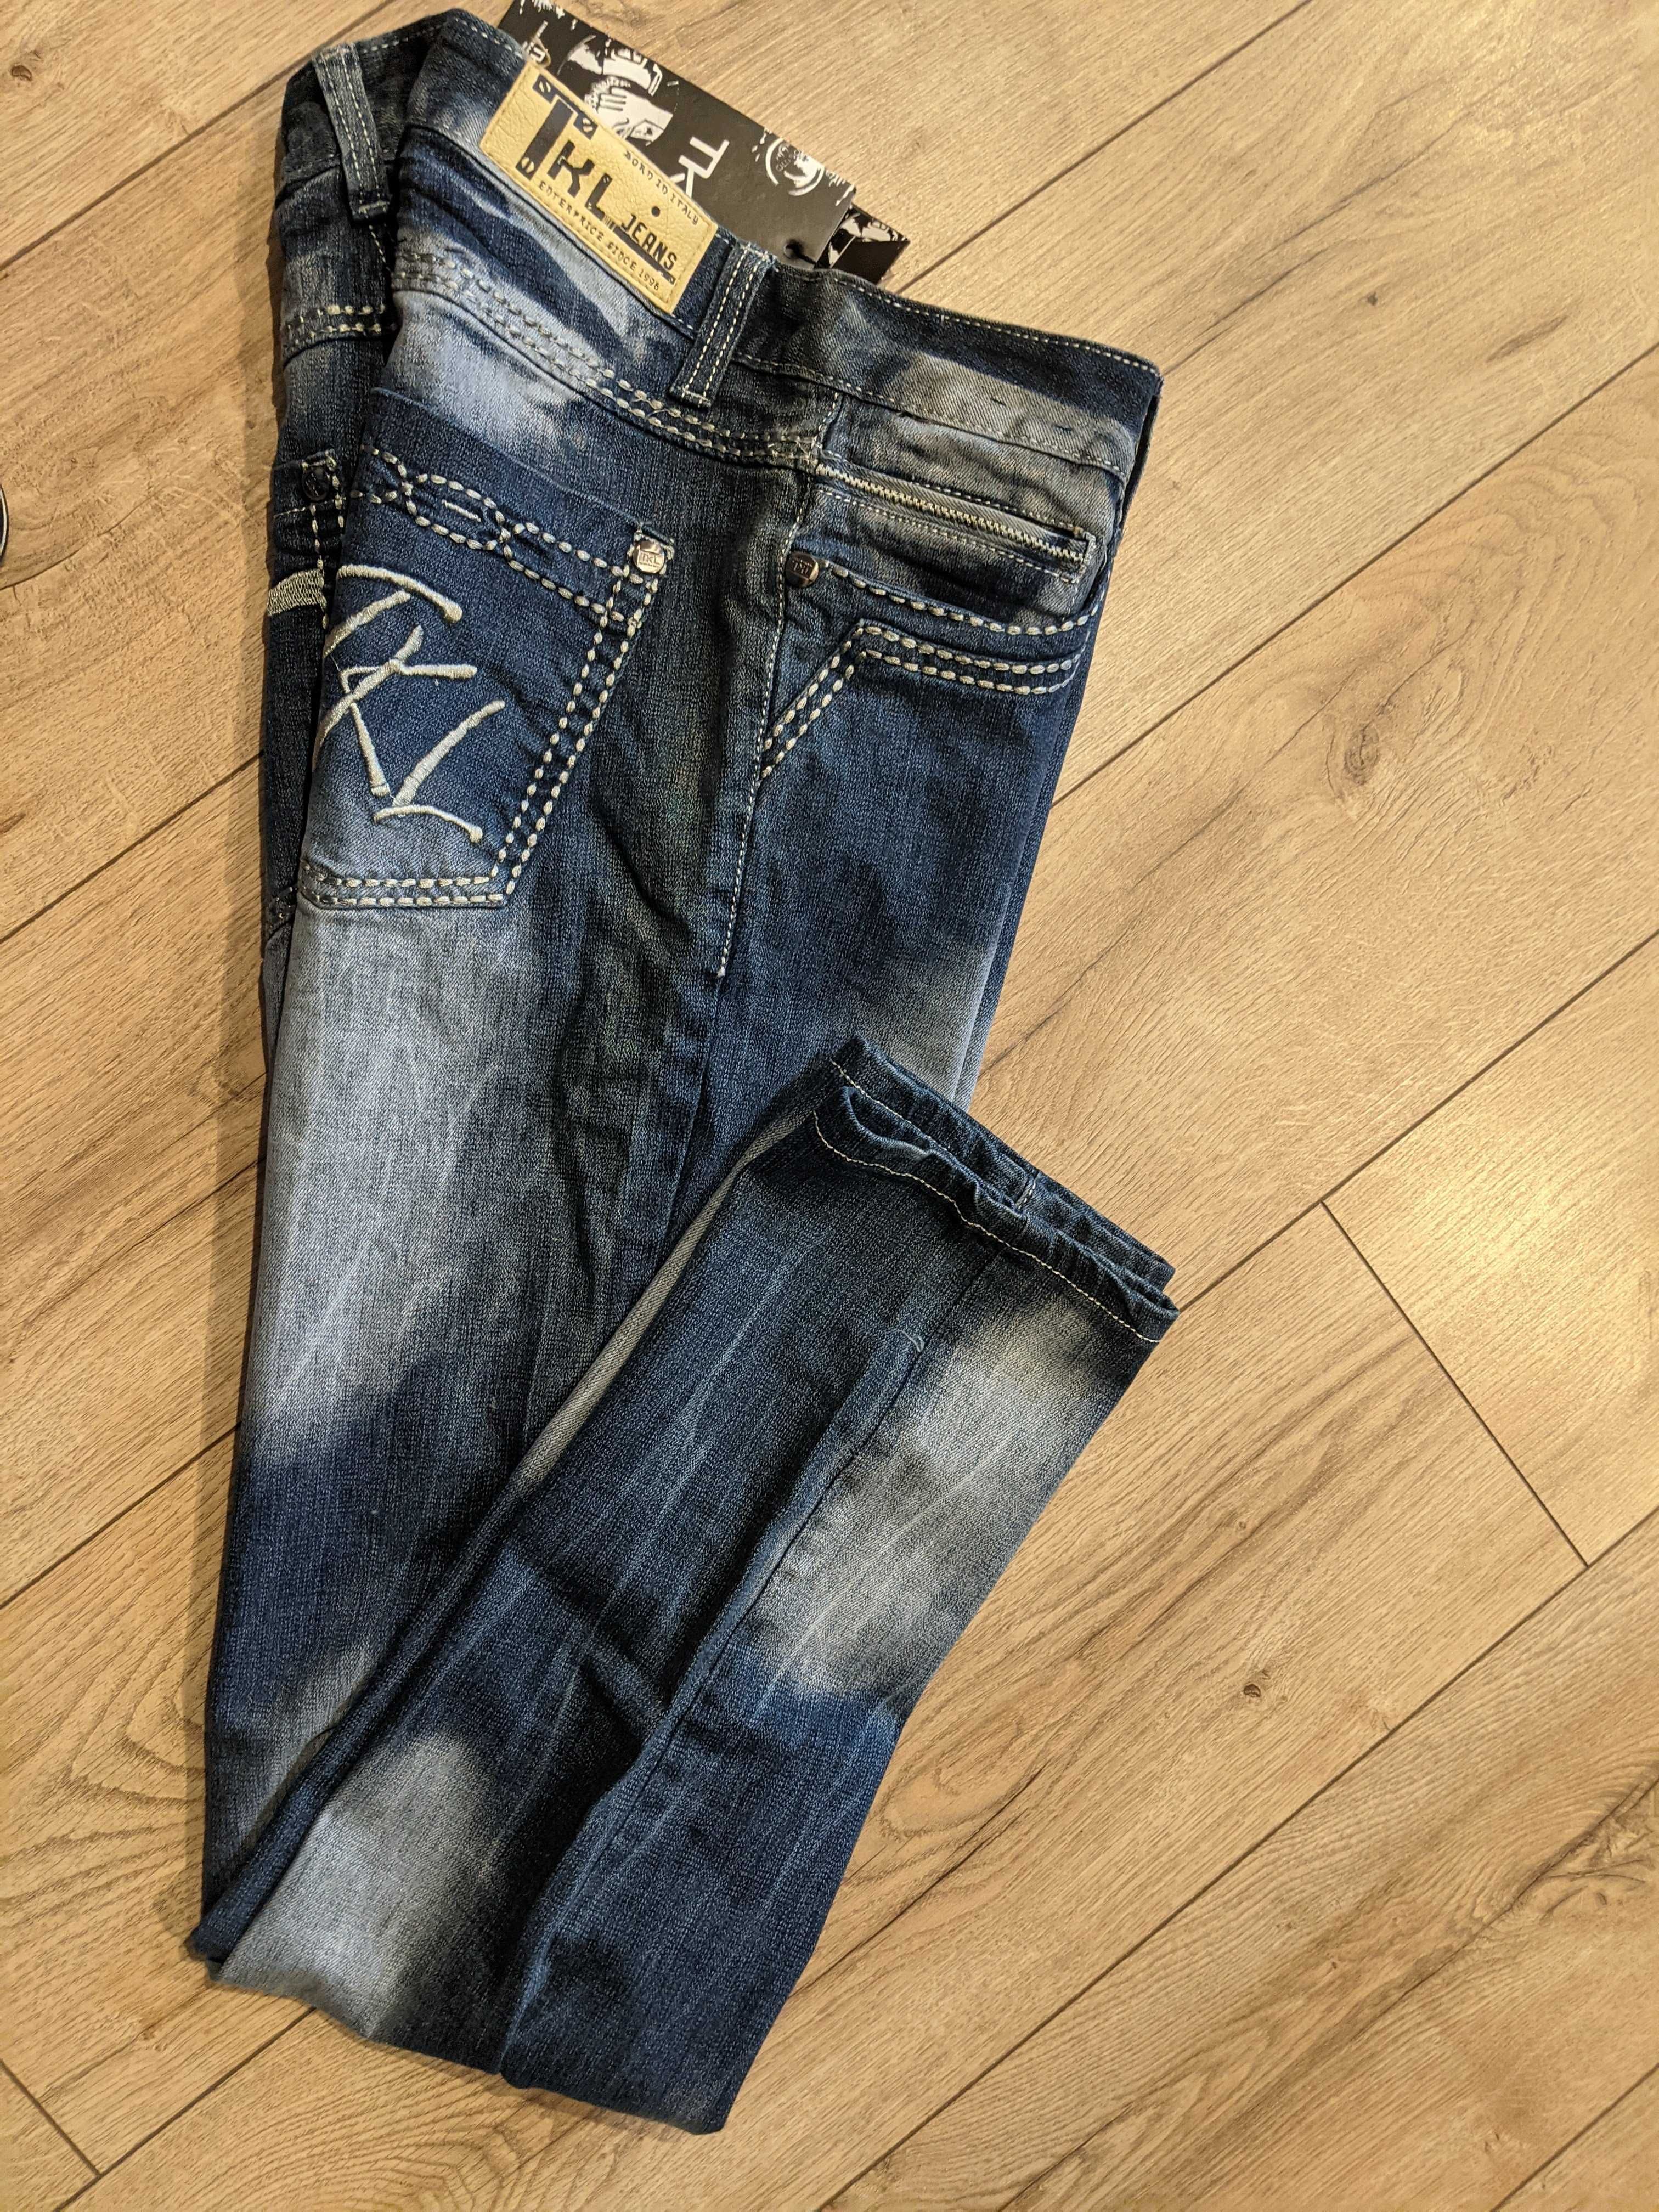 Spodnie męskie 34 TKL elastyczne jeans L angielskie pas92